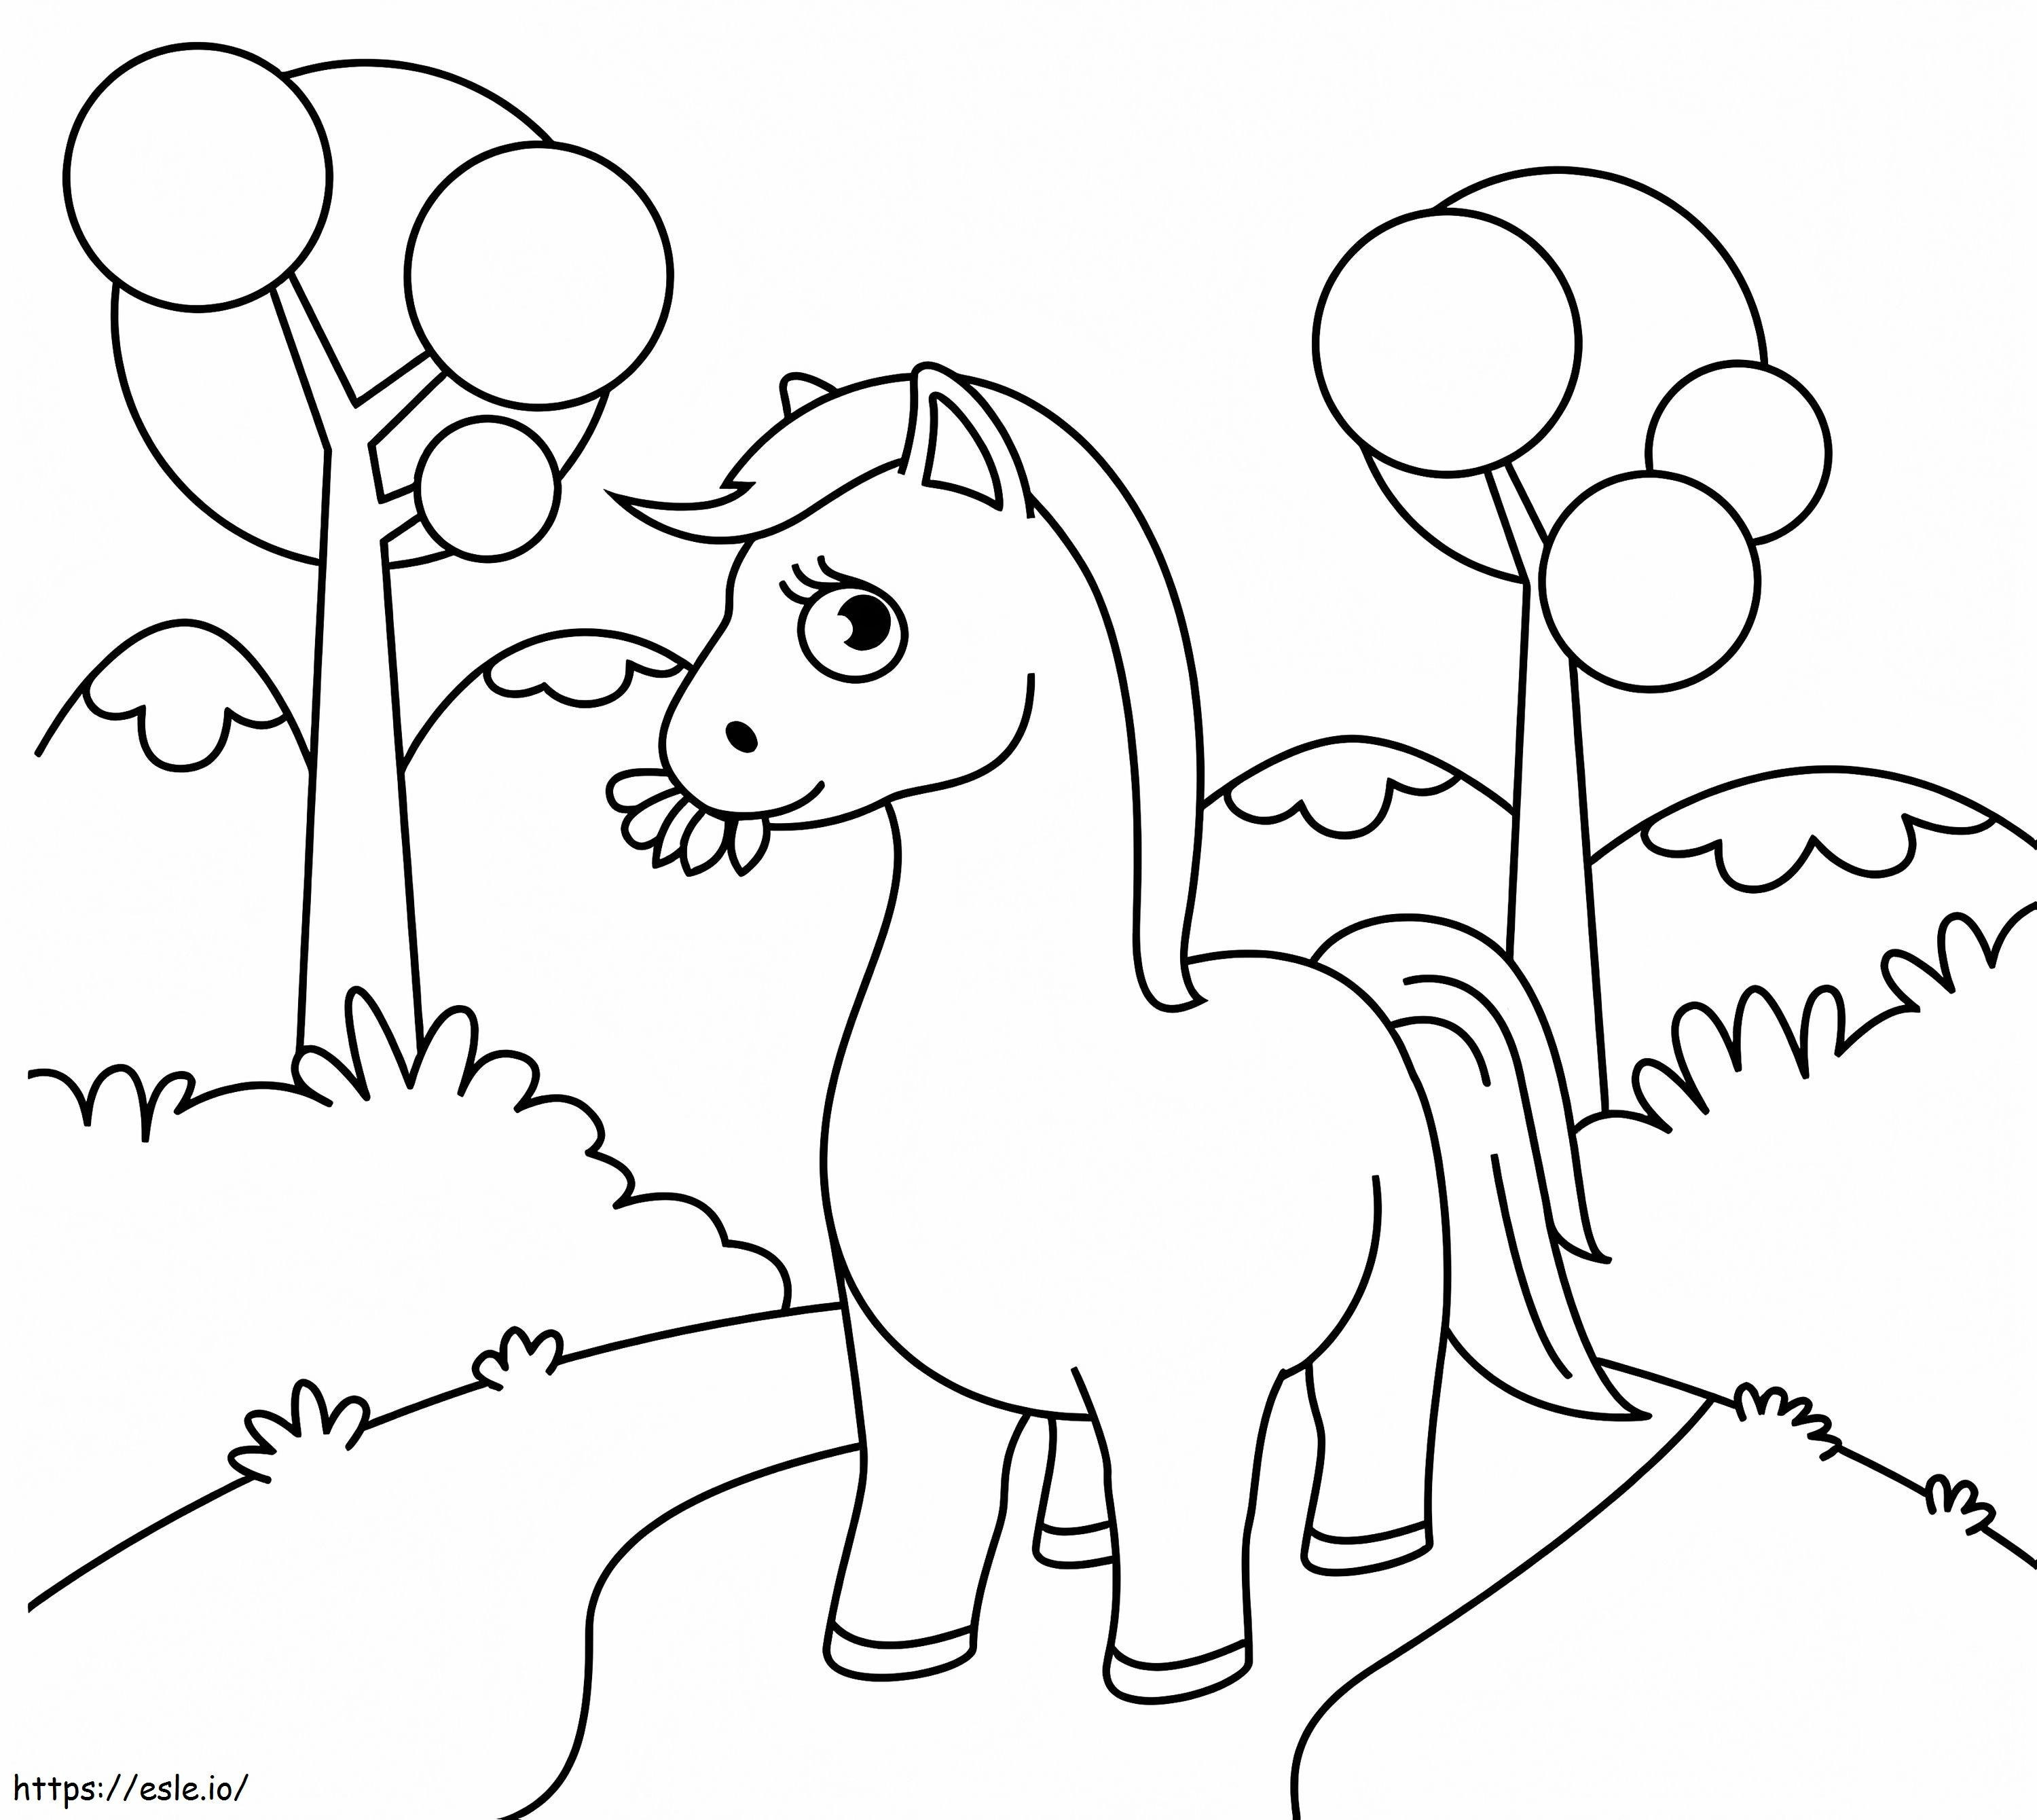 Cavalo comendo folhas para colorir